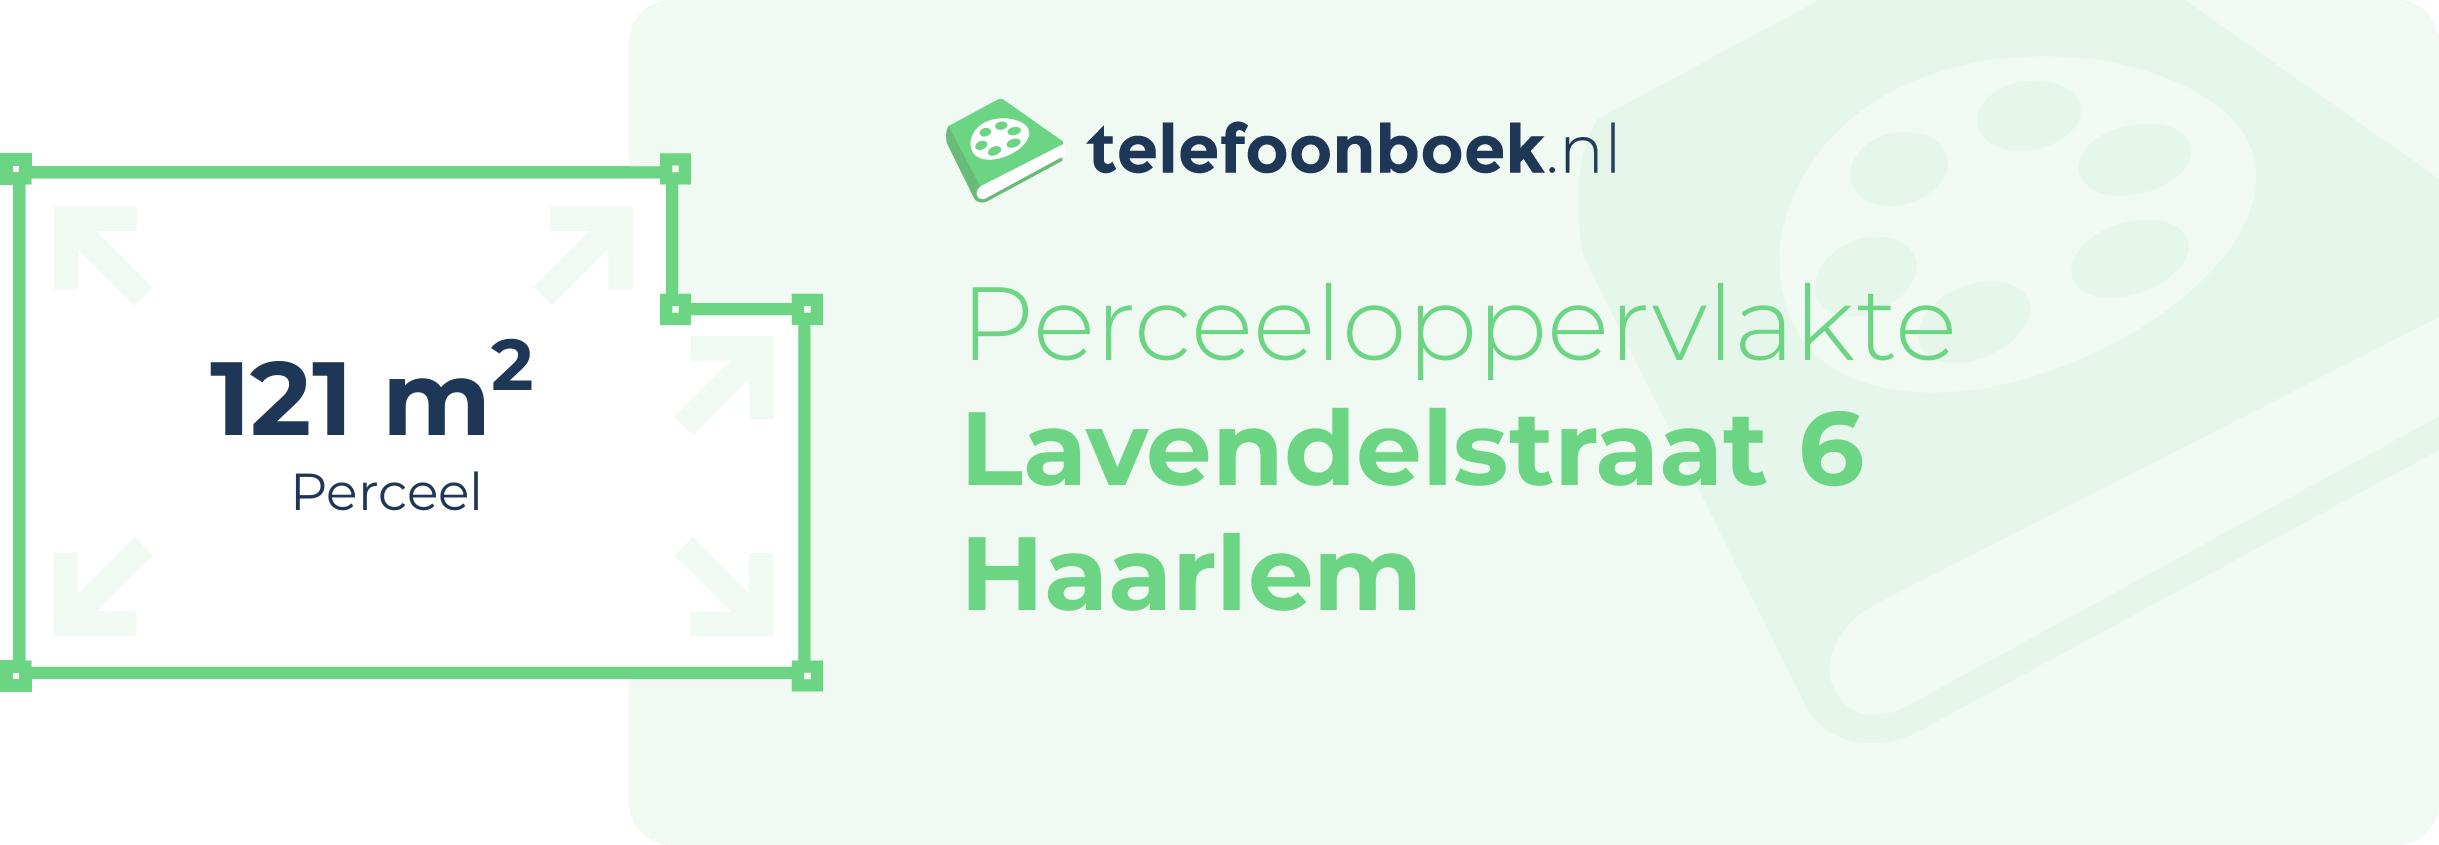 Perceeloppervlakte Lavendelstraat 6 Haarlem